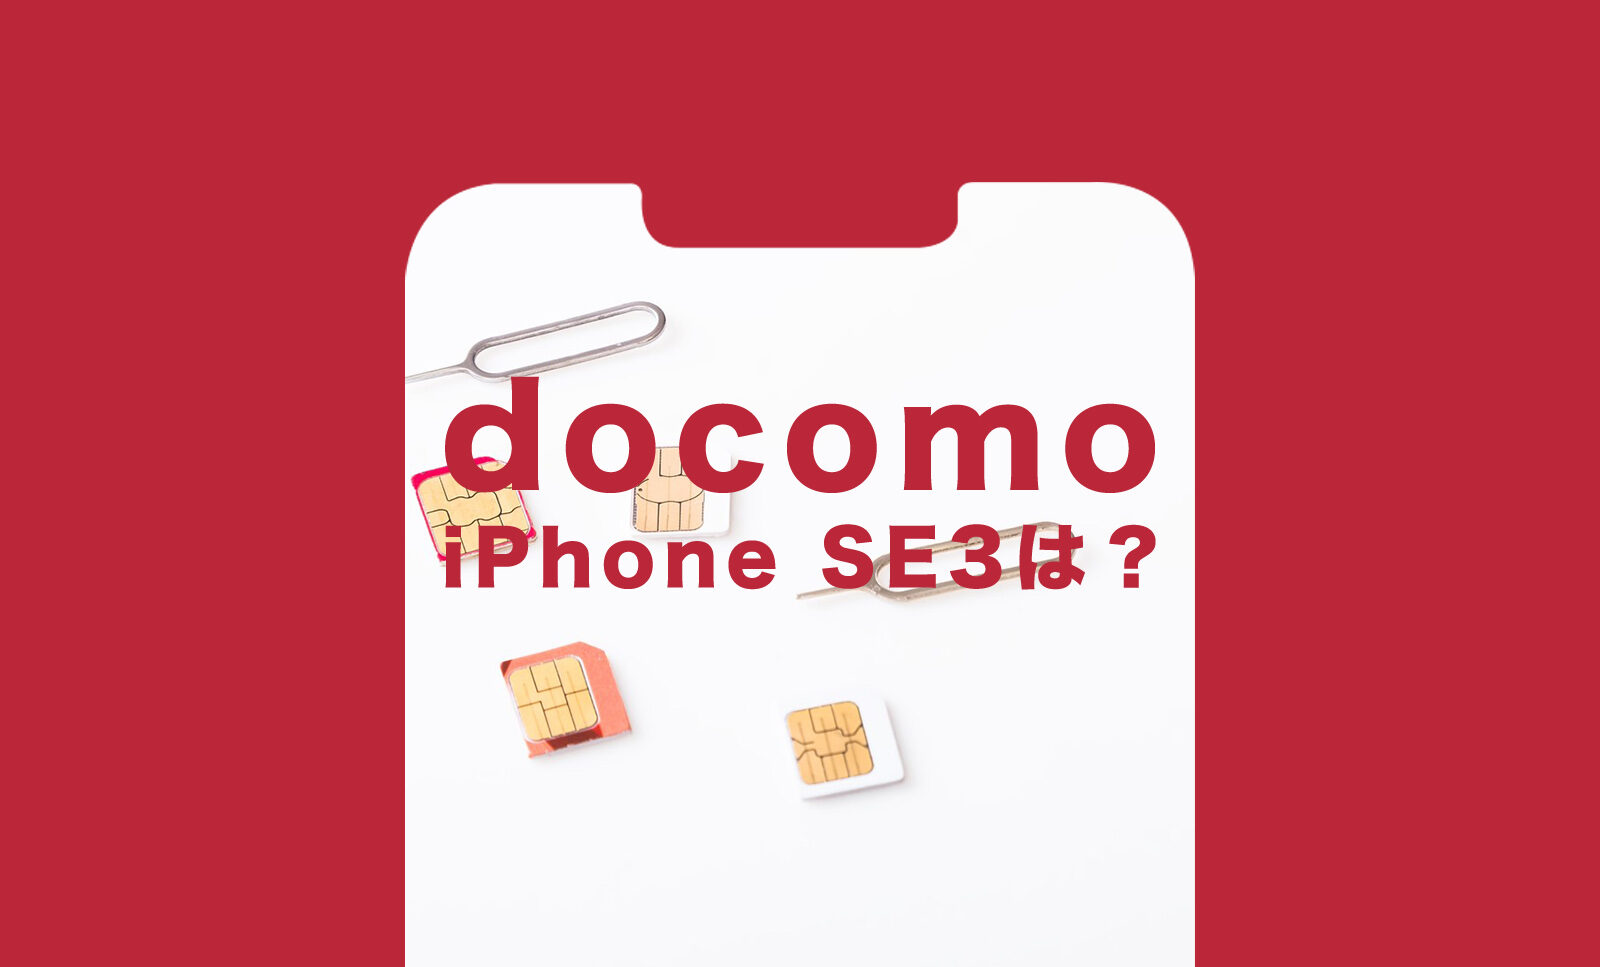 ドコモのiPhone SE3(第3世代)の価格&値段は？【2022年最新】のサムネイル画像